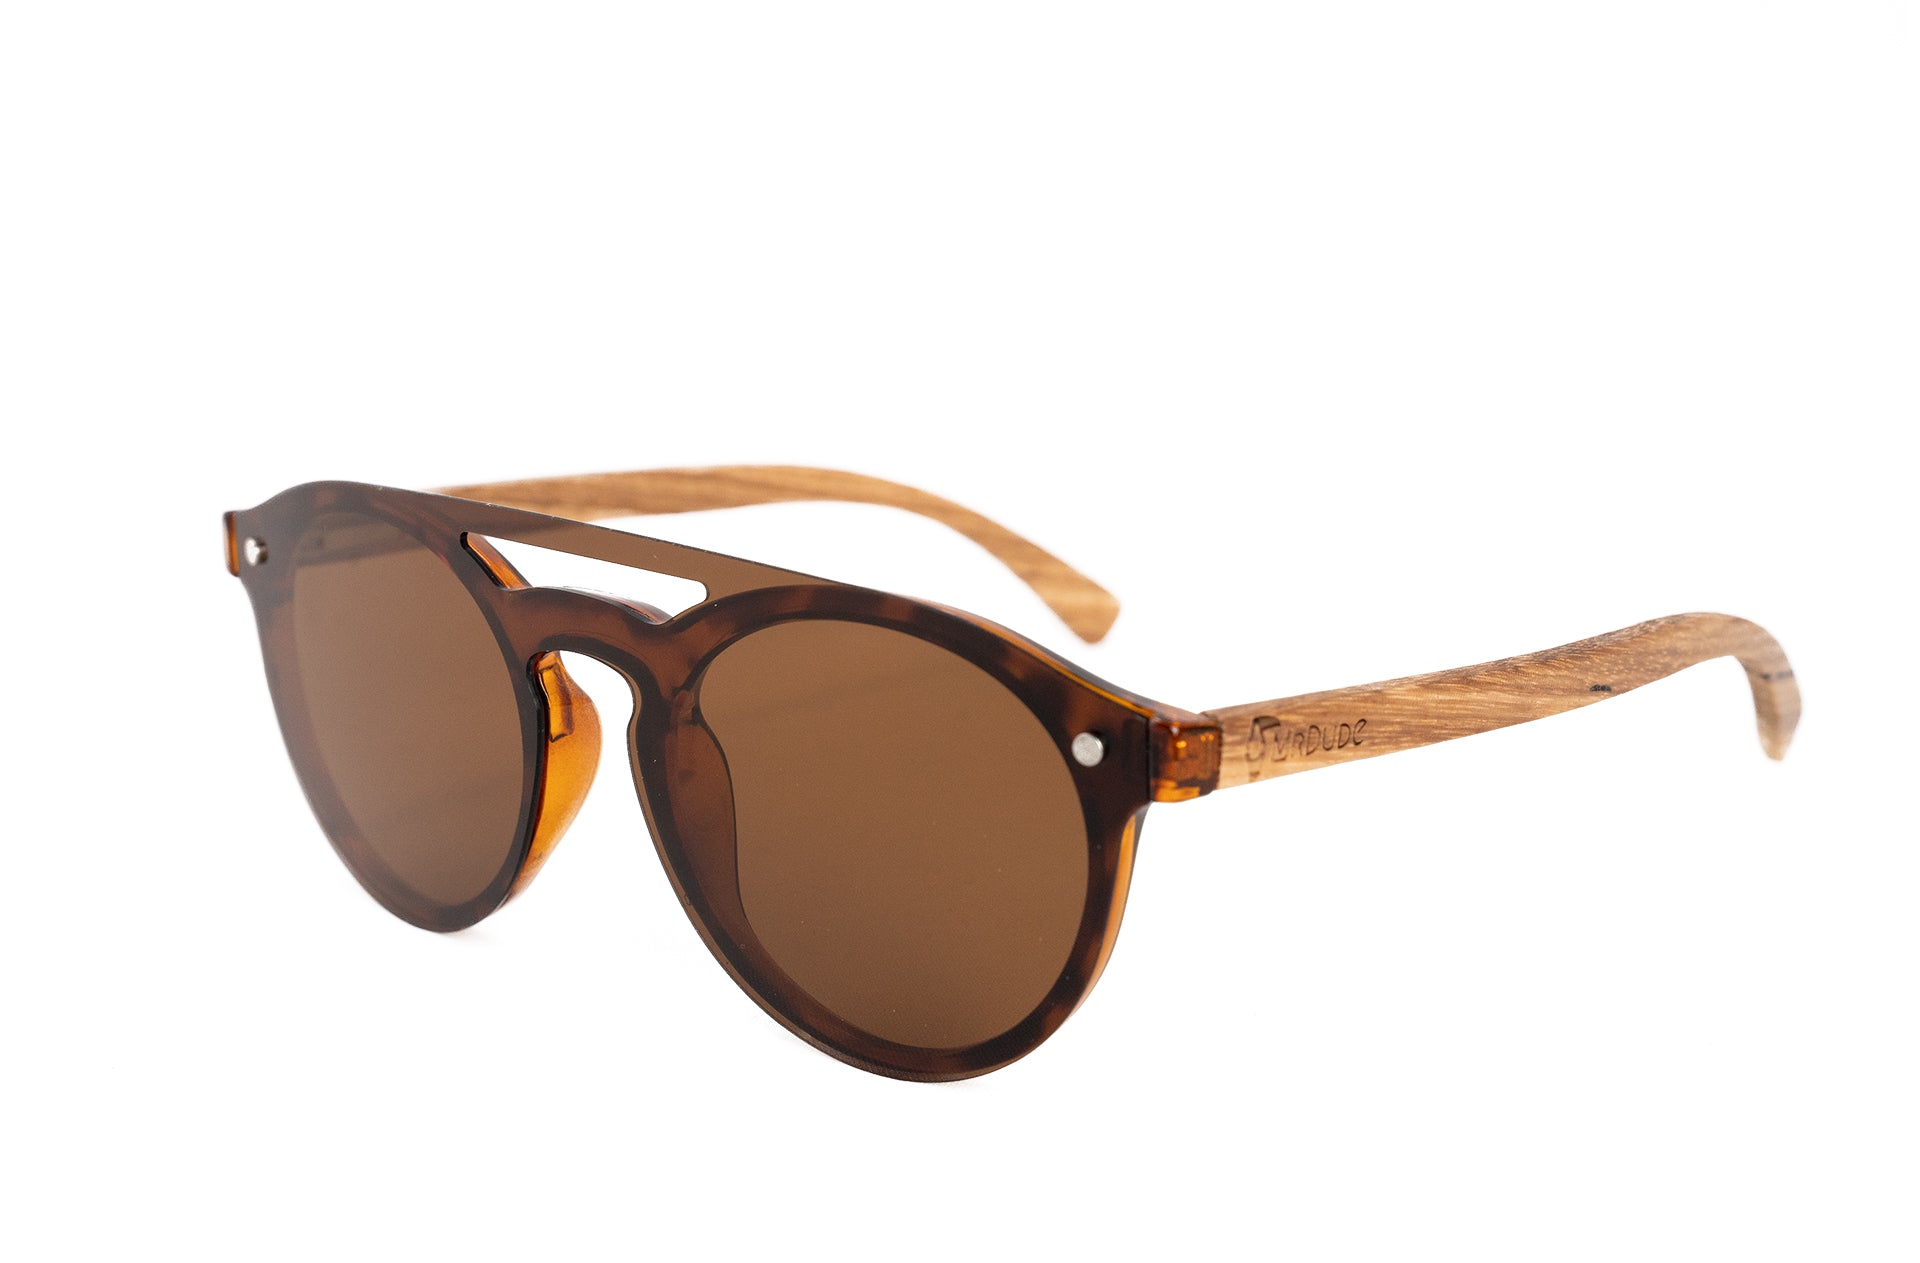 "HoneyBee" Eco-friendly Polarized Sunglasses